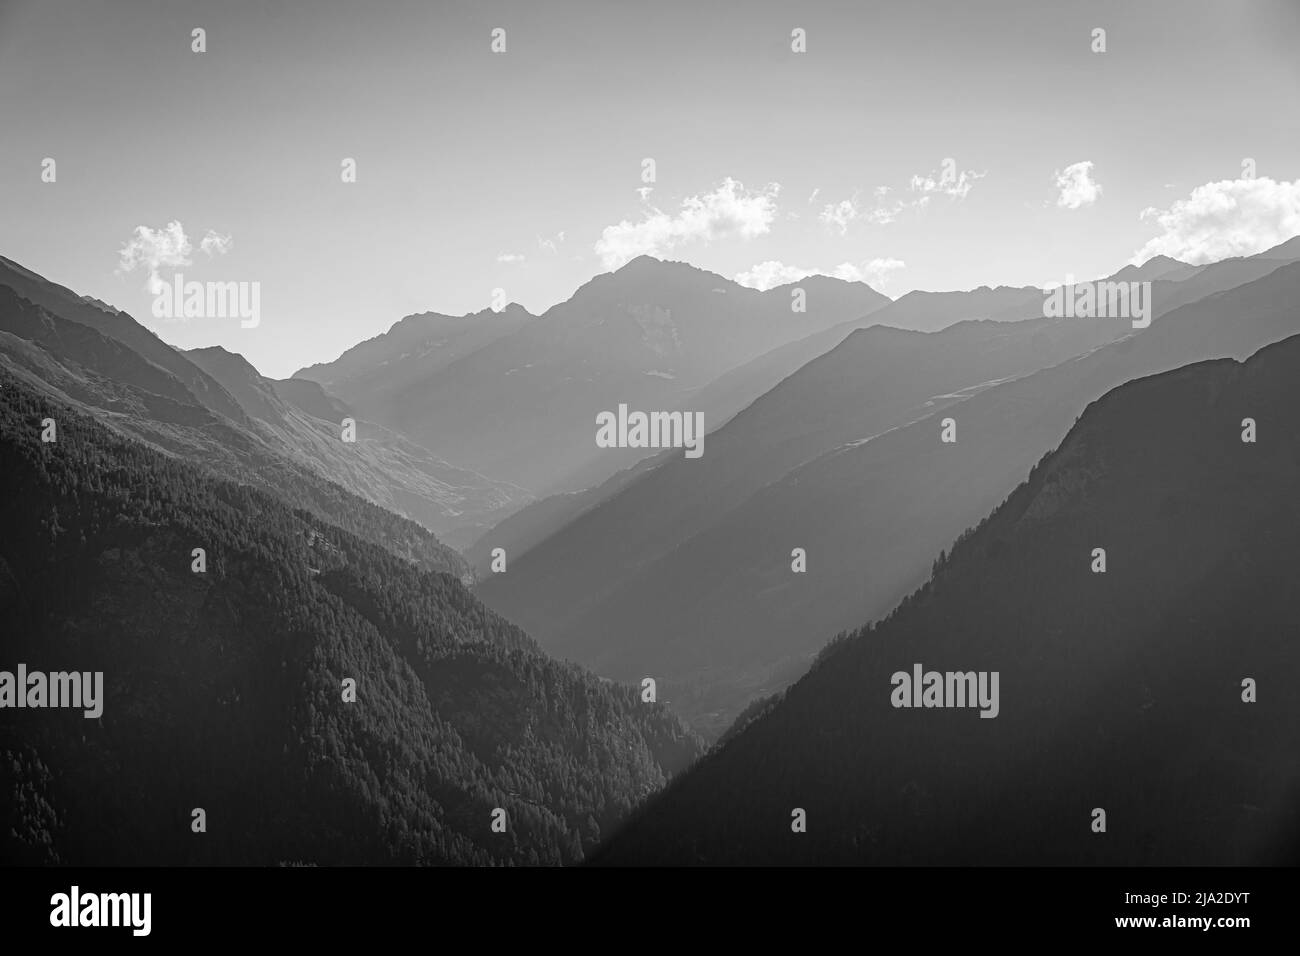 Paysage de montagnes en France avec coucher de soleil en noir et blanc Banque D'Images